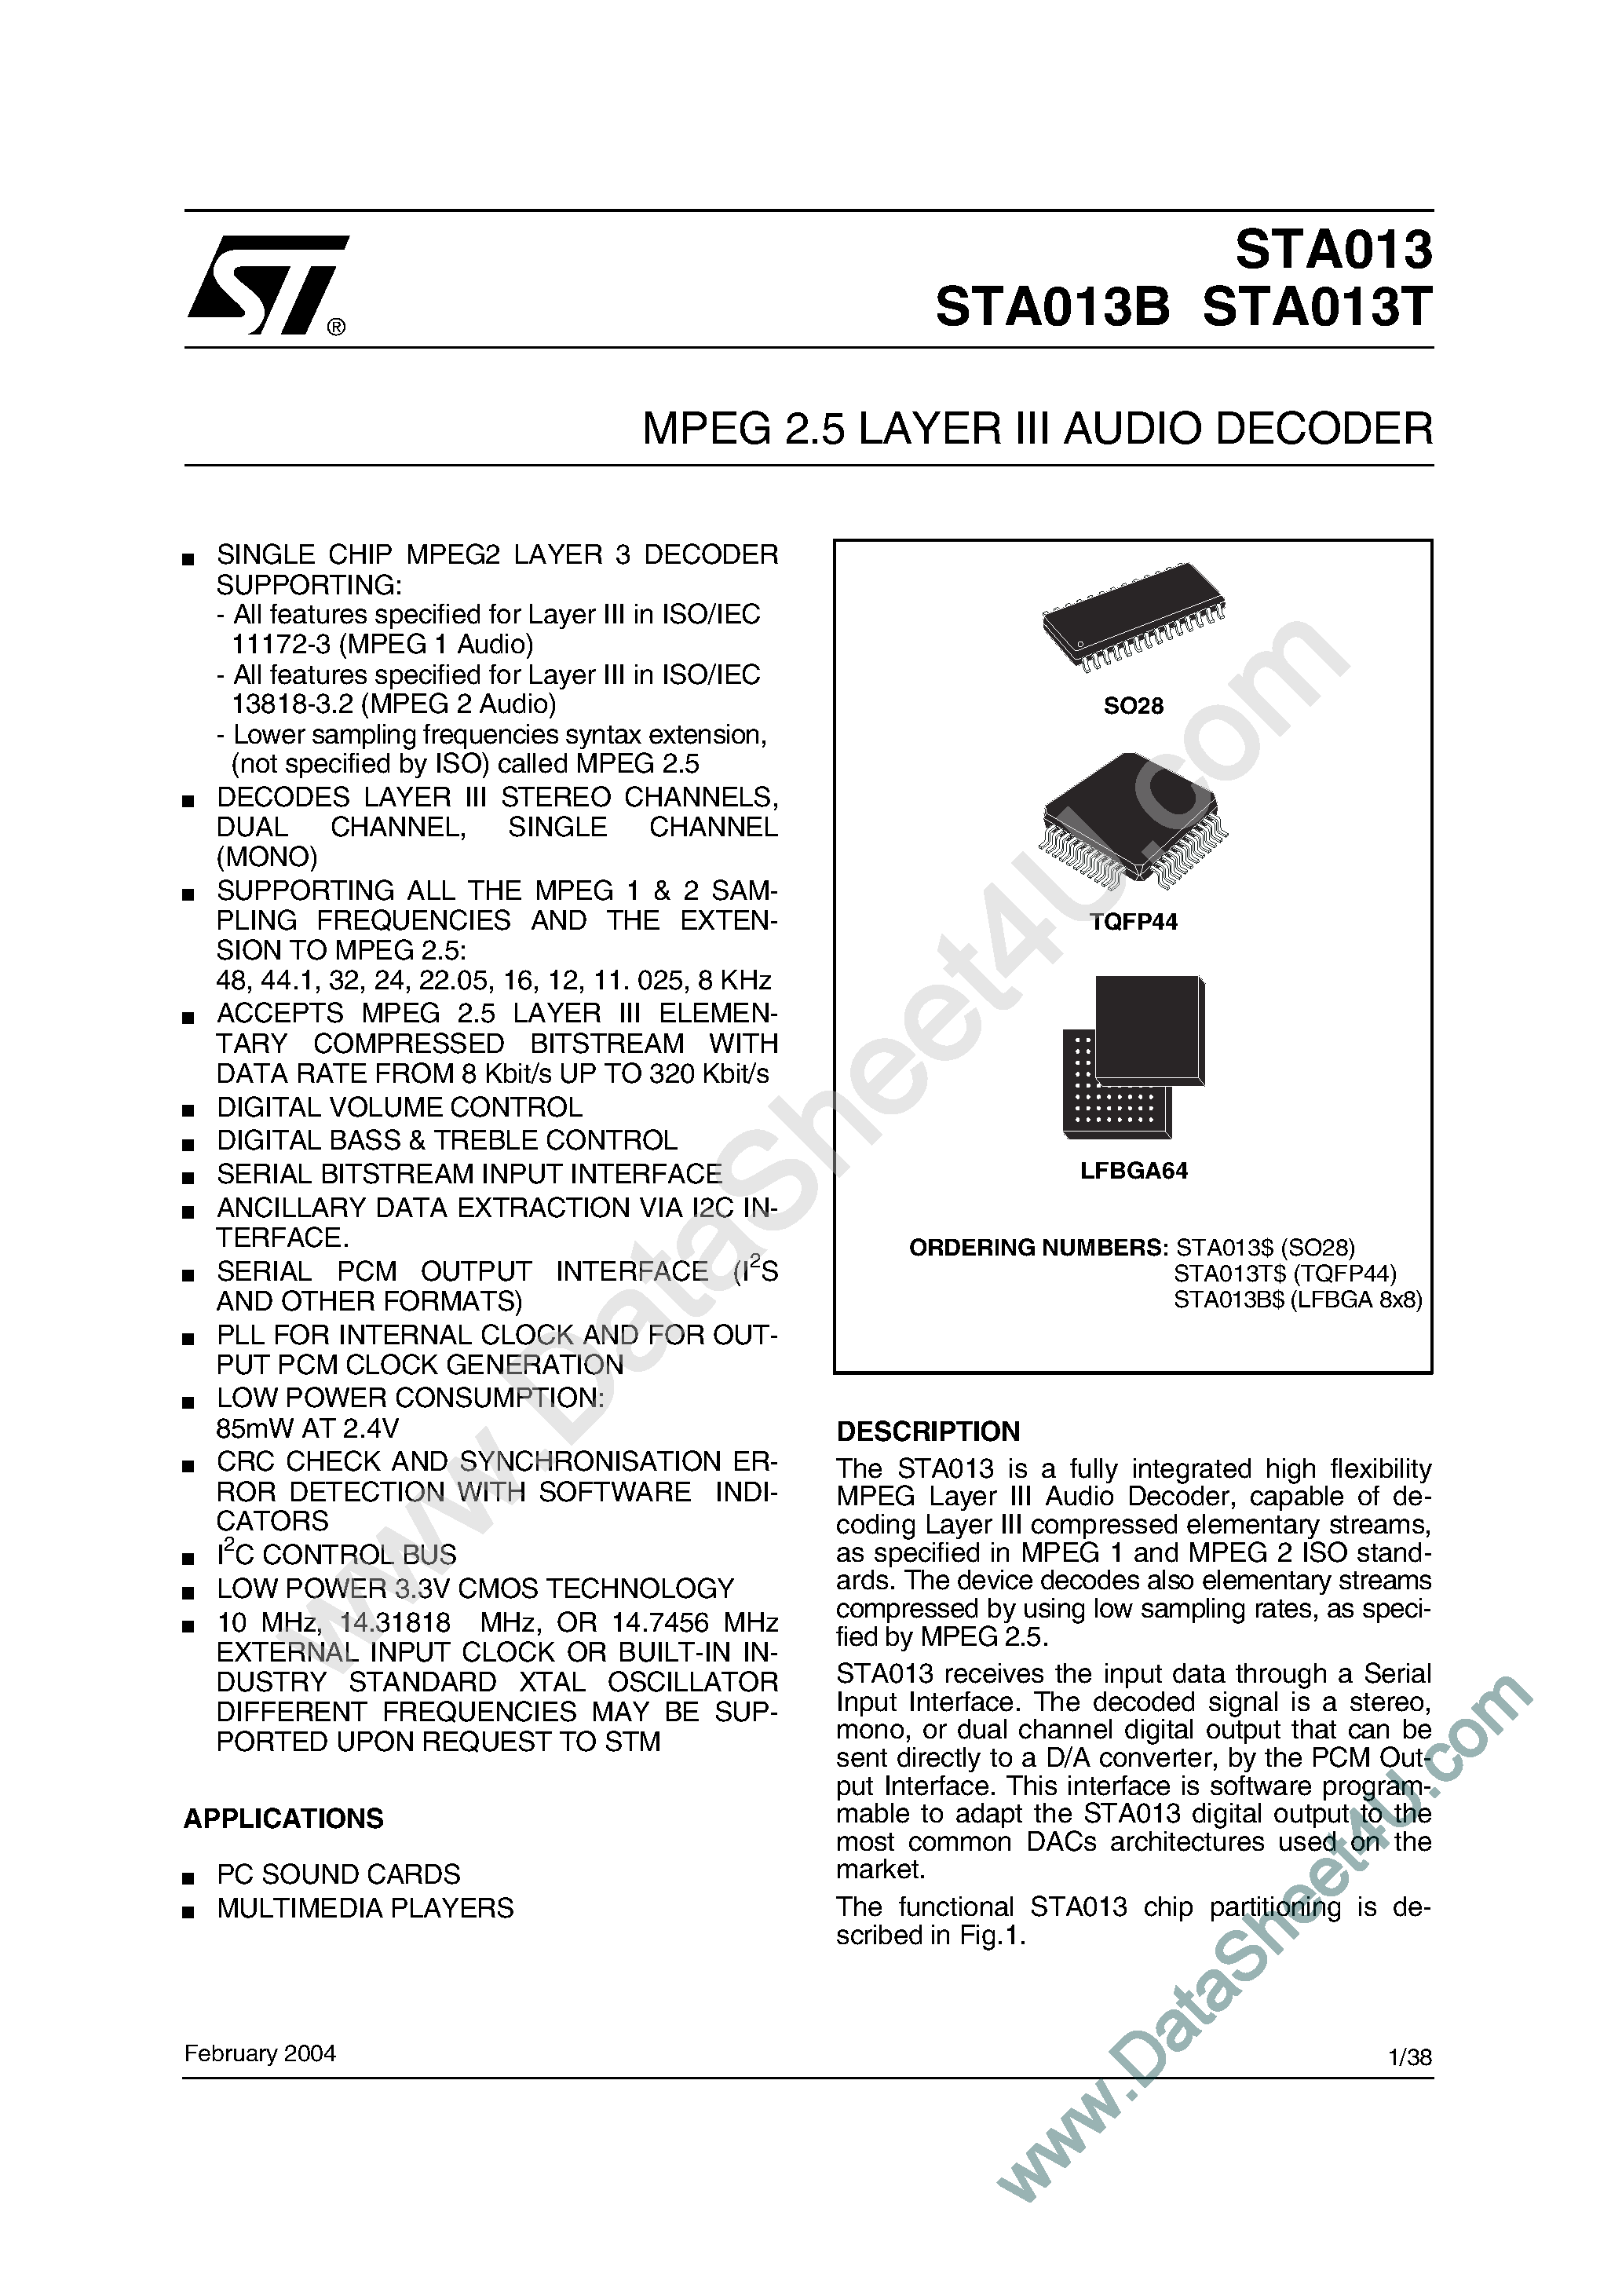 Datasheet STA013 - (STA013x) MPEG 2.5 LAYER III AUDIO DECODER page 1